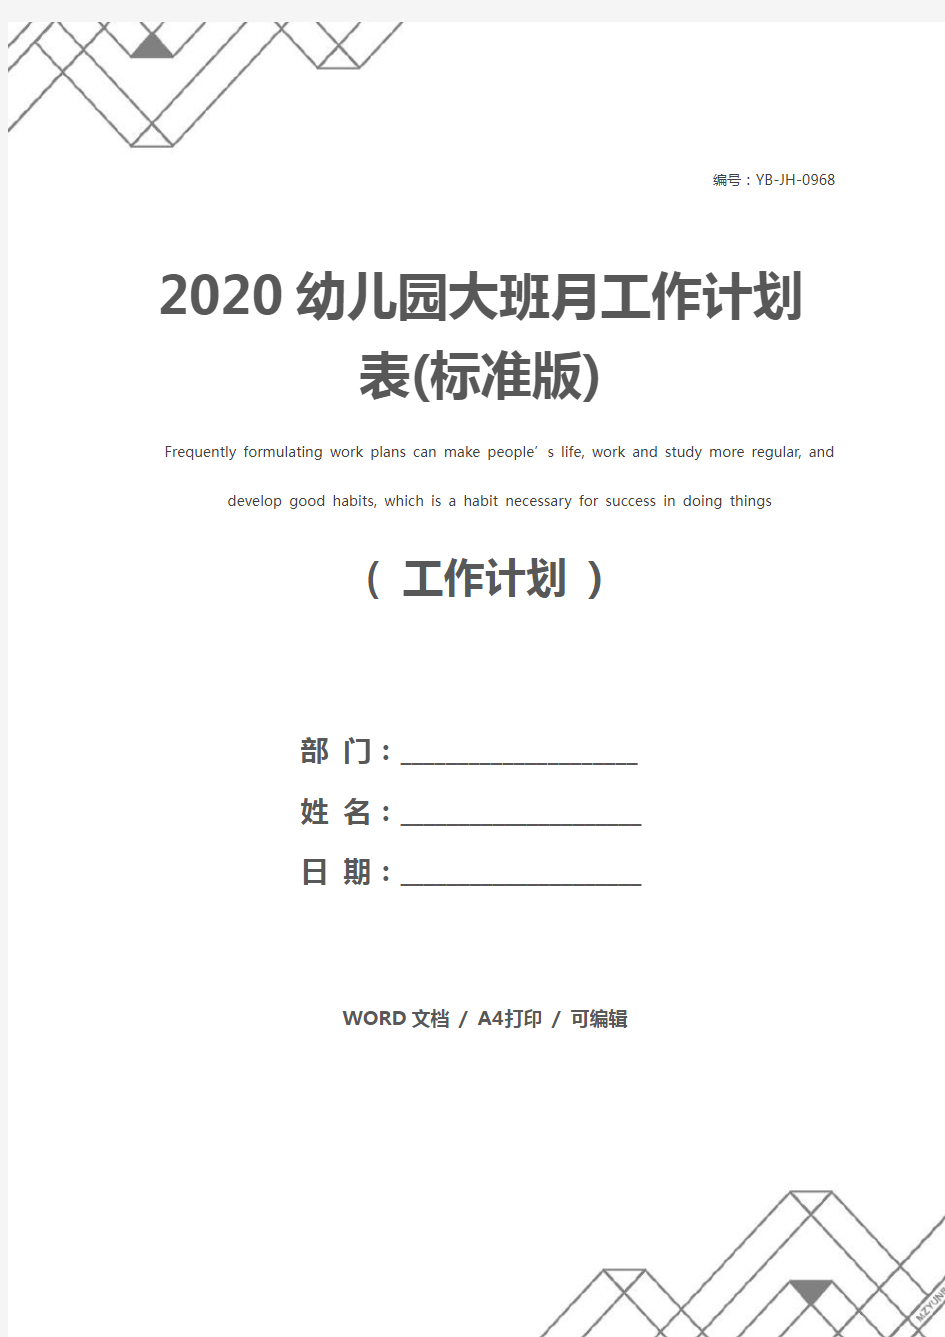 2020幼儿园大班月工作计划表(标准版)